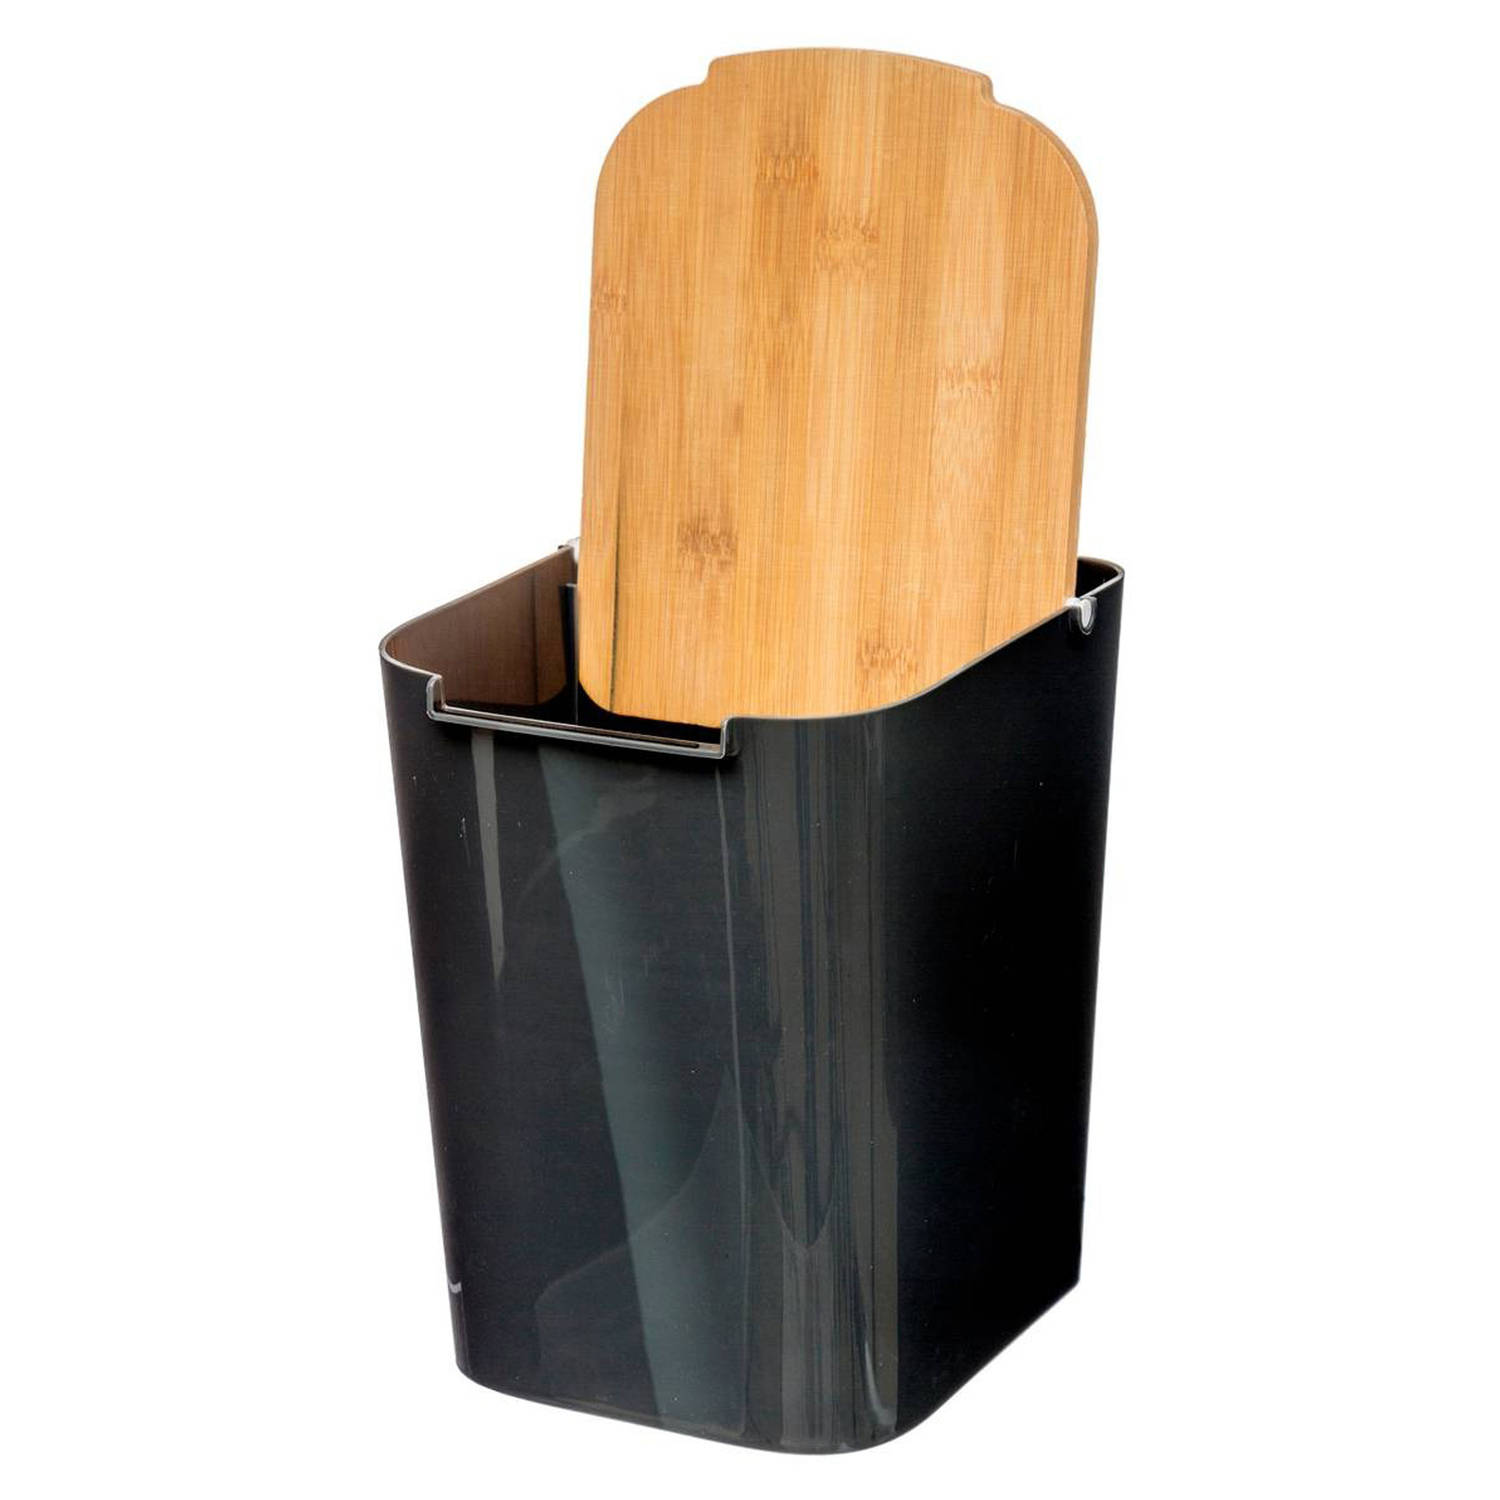 5Five prullenbak-vuilnisbak 5 liter bamboe zwart-lichtbruin 24 x 19 cm badkamer afvalbak Pedaalemmer